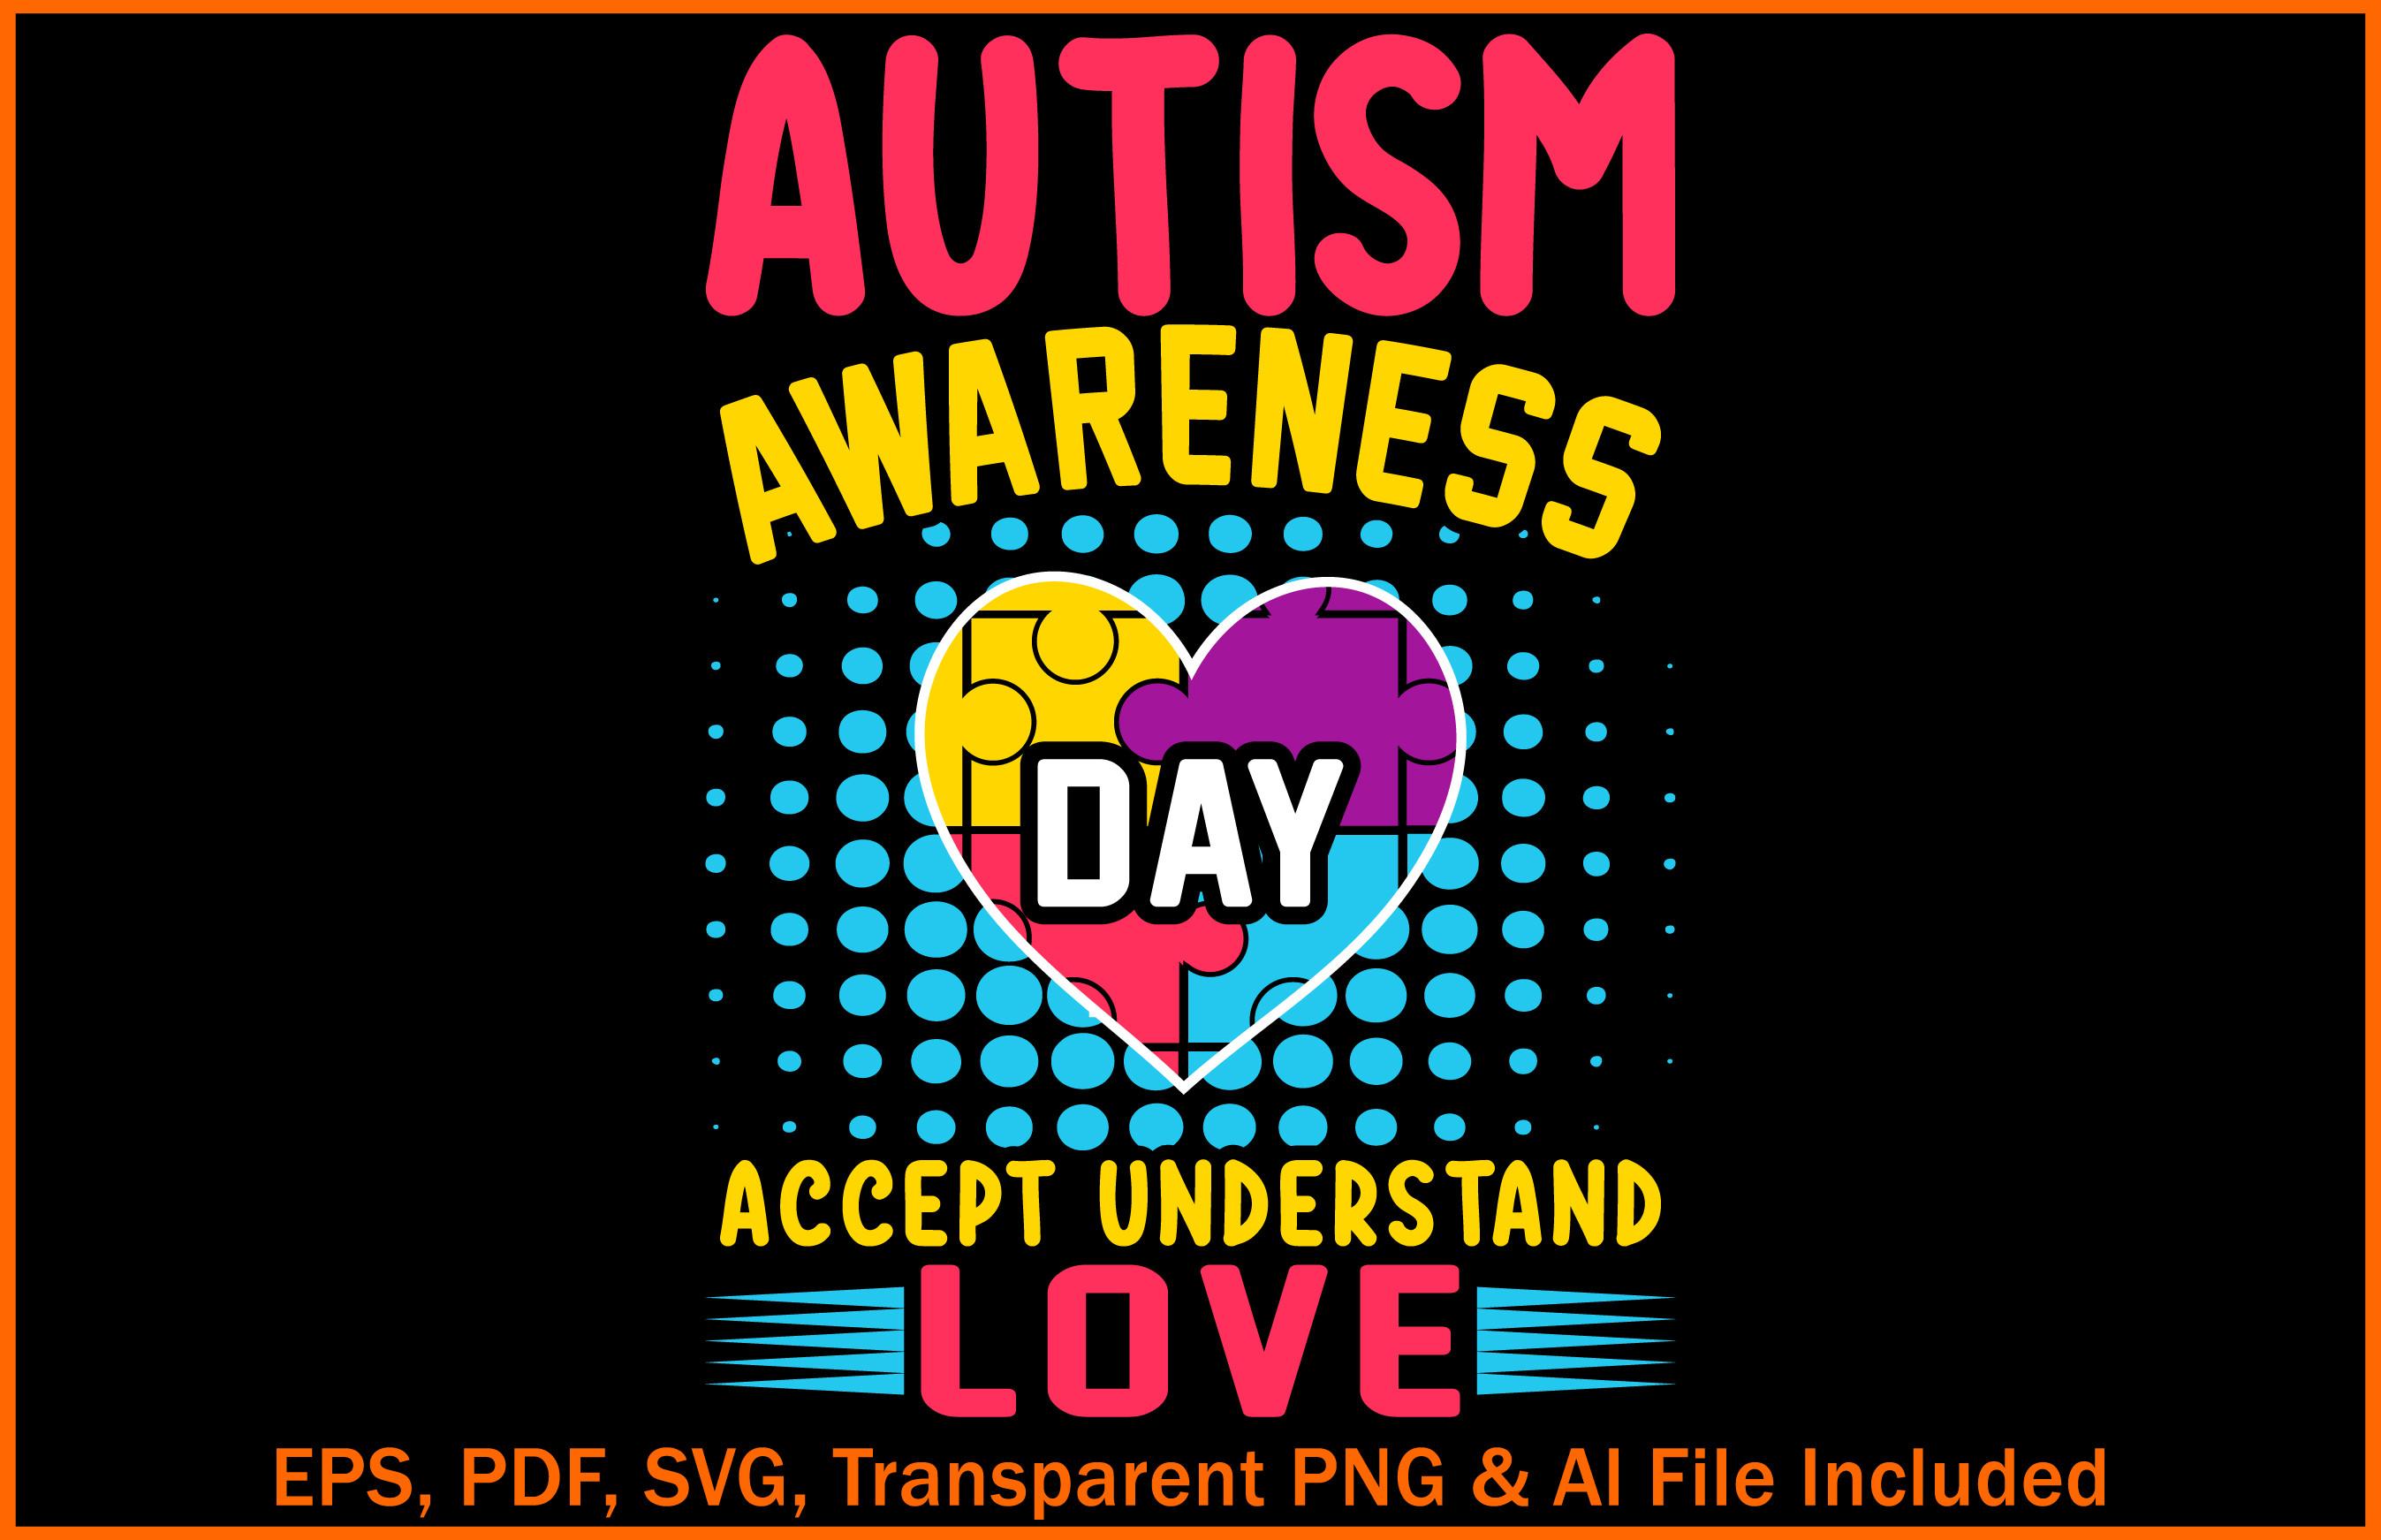 Autism Awareness Day T-Shirts Design.